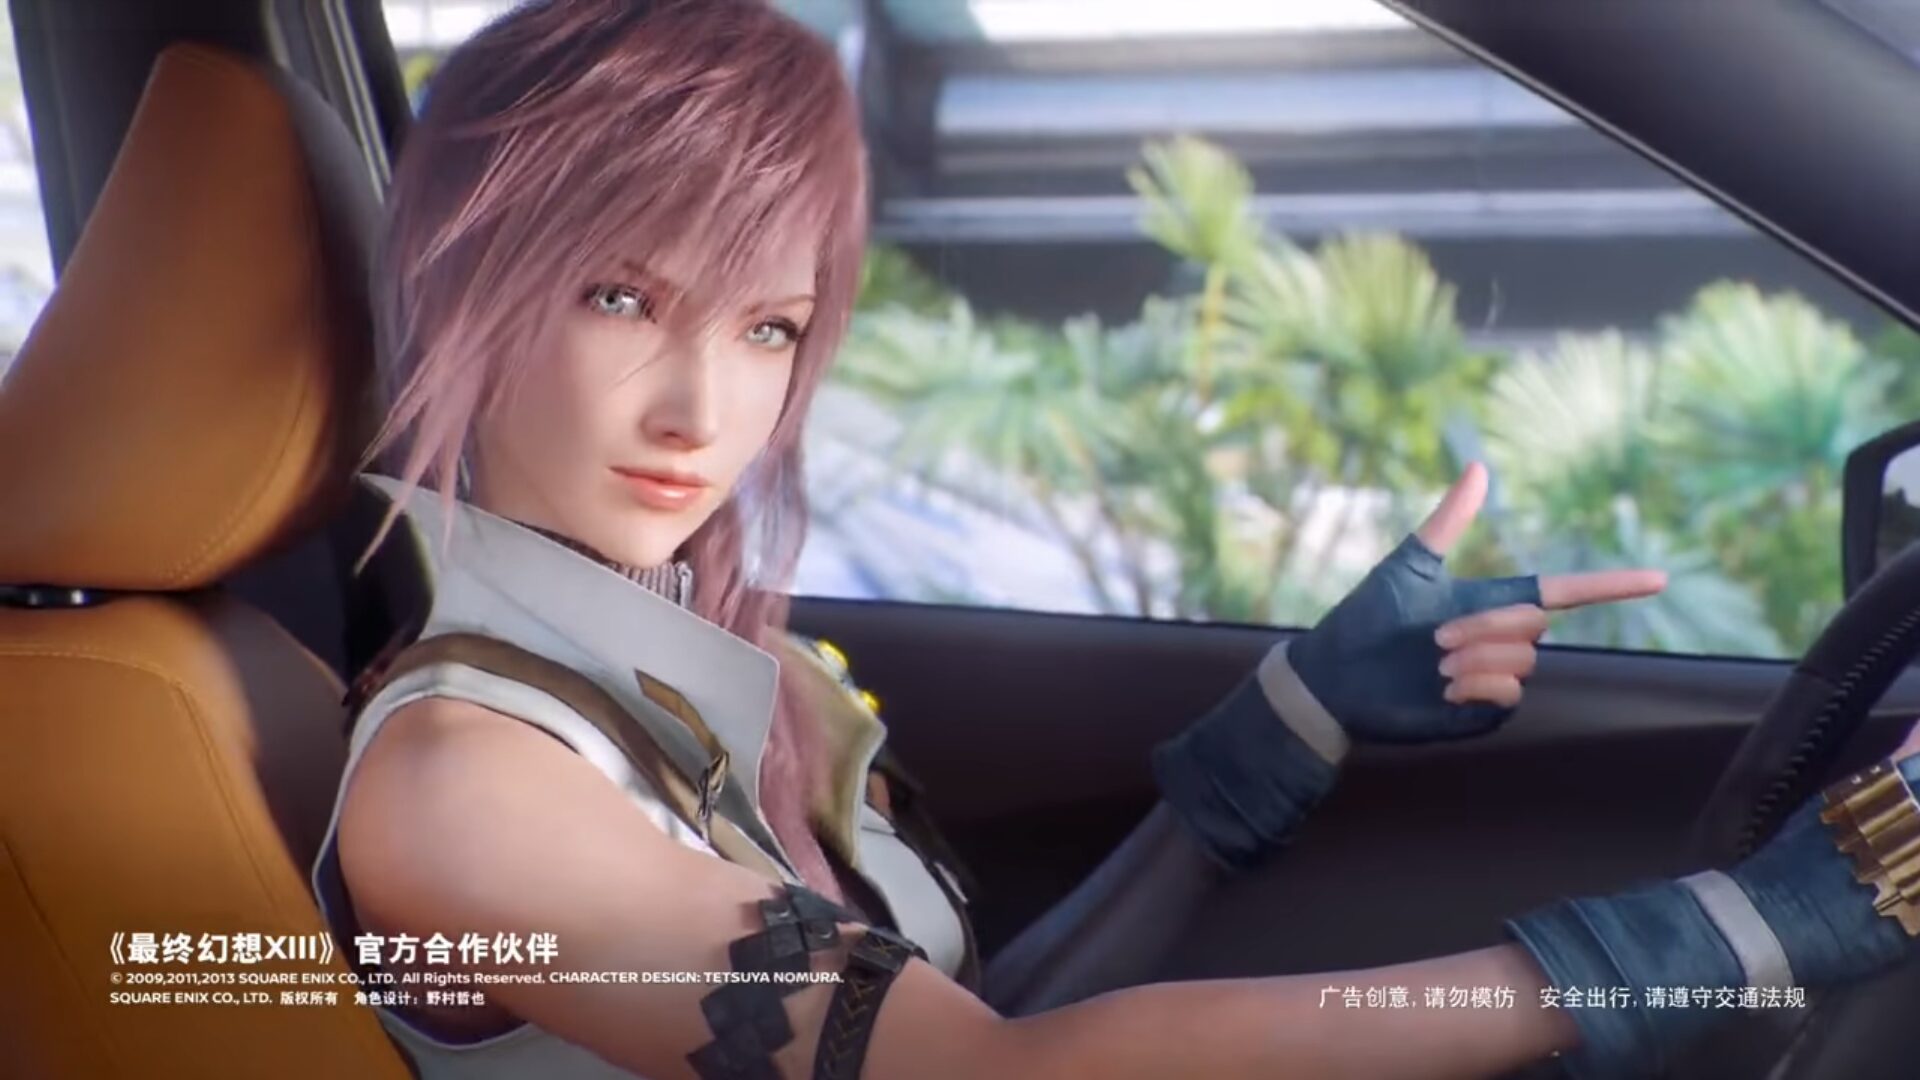 Final Fantasy XIII car ad